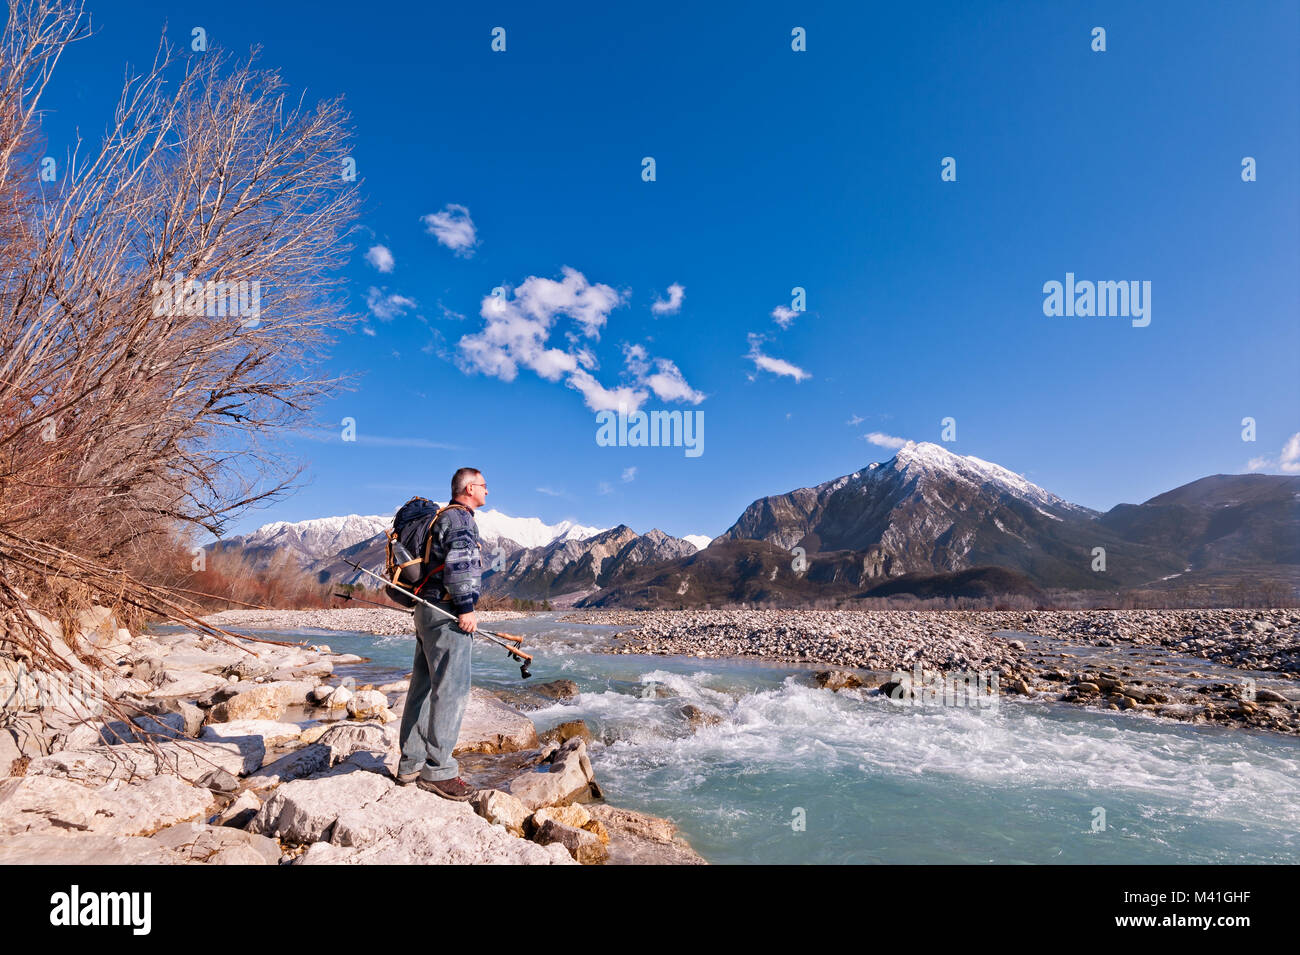 Escursionista in piedi sulla riva del fiume, guardando le montagne paesaggio. Alpi,l'Italia,Friuli. Foto Stock